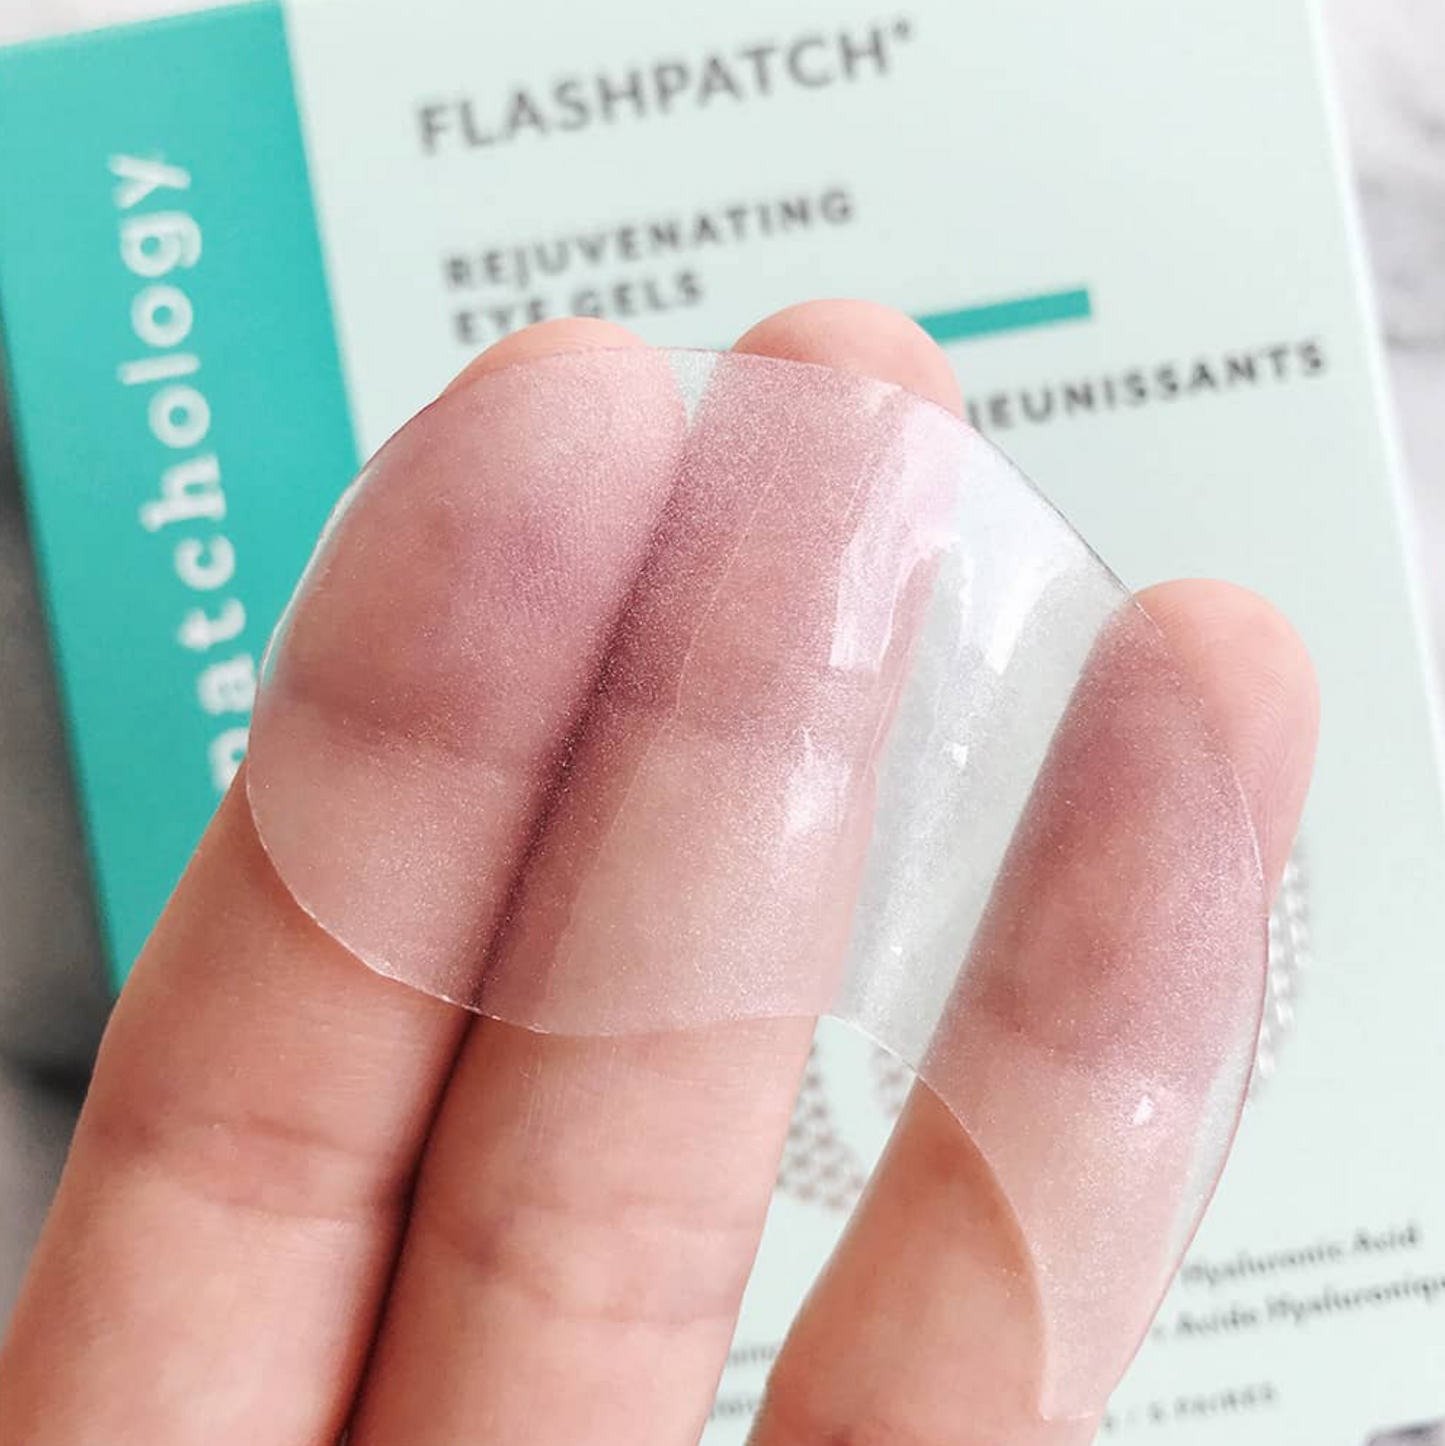 Patchology | FlashPatch Rejuvenating Collagen Eye Gels